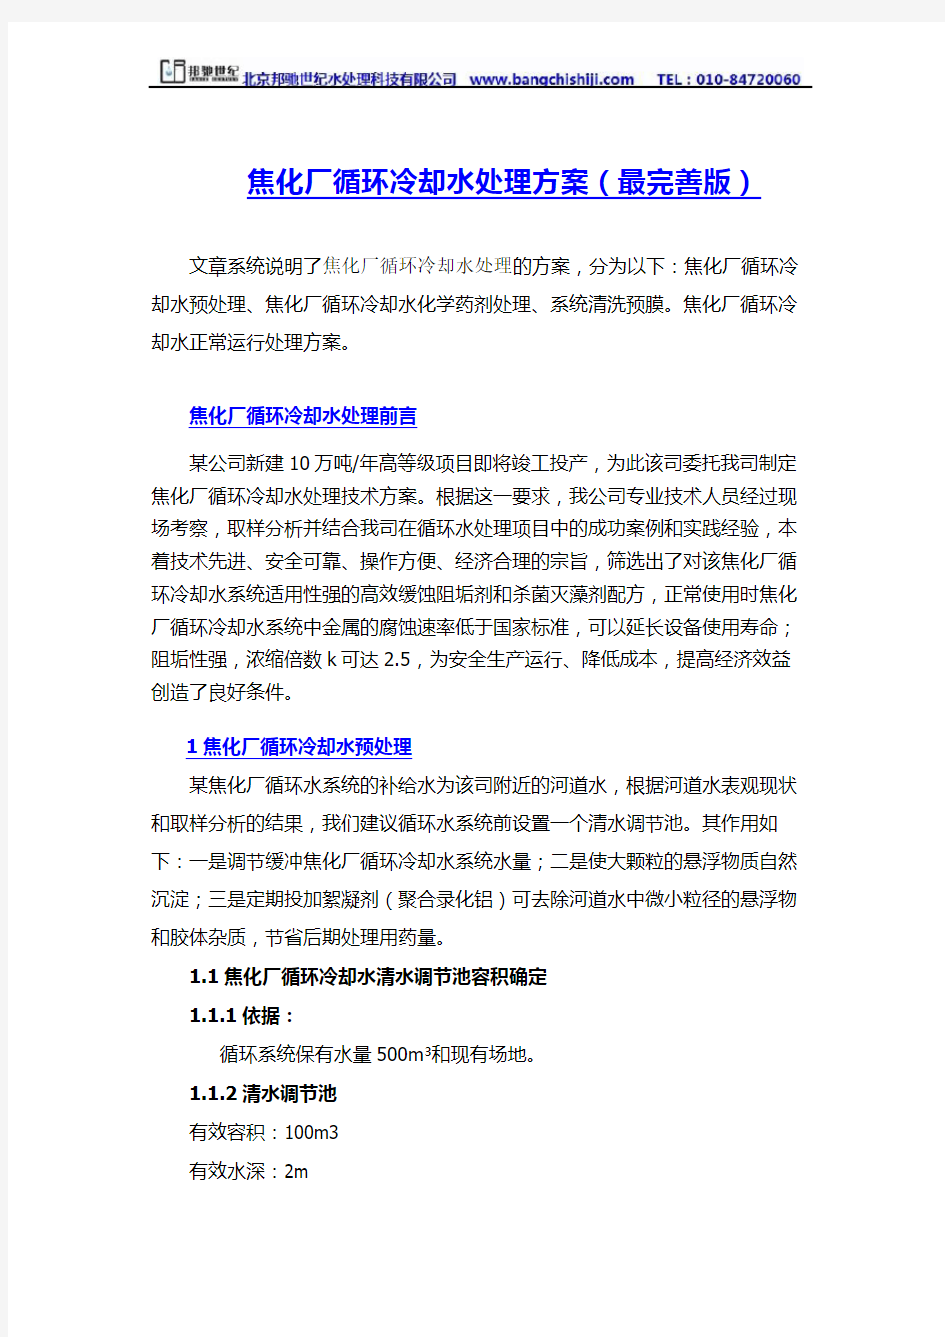 焦化厂循环水处理方案(详细版)—北京邦驰世纪水处理科技有限公司